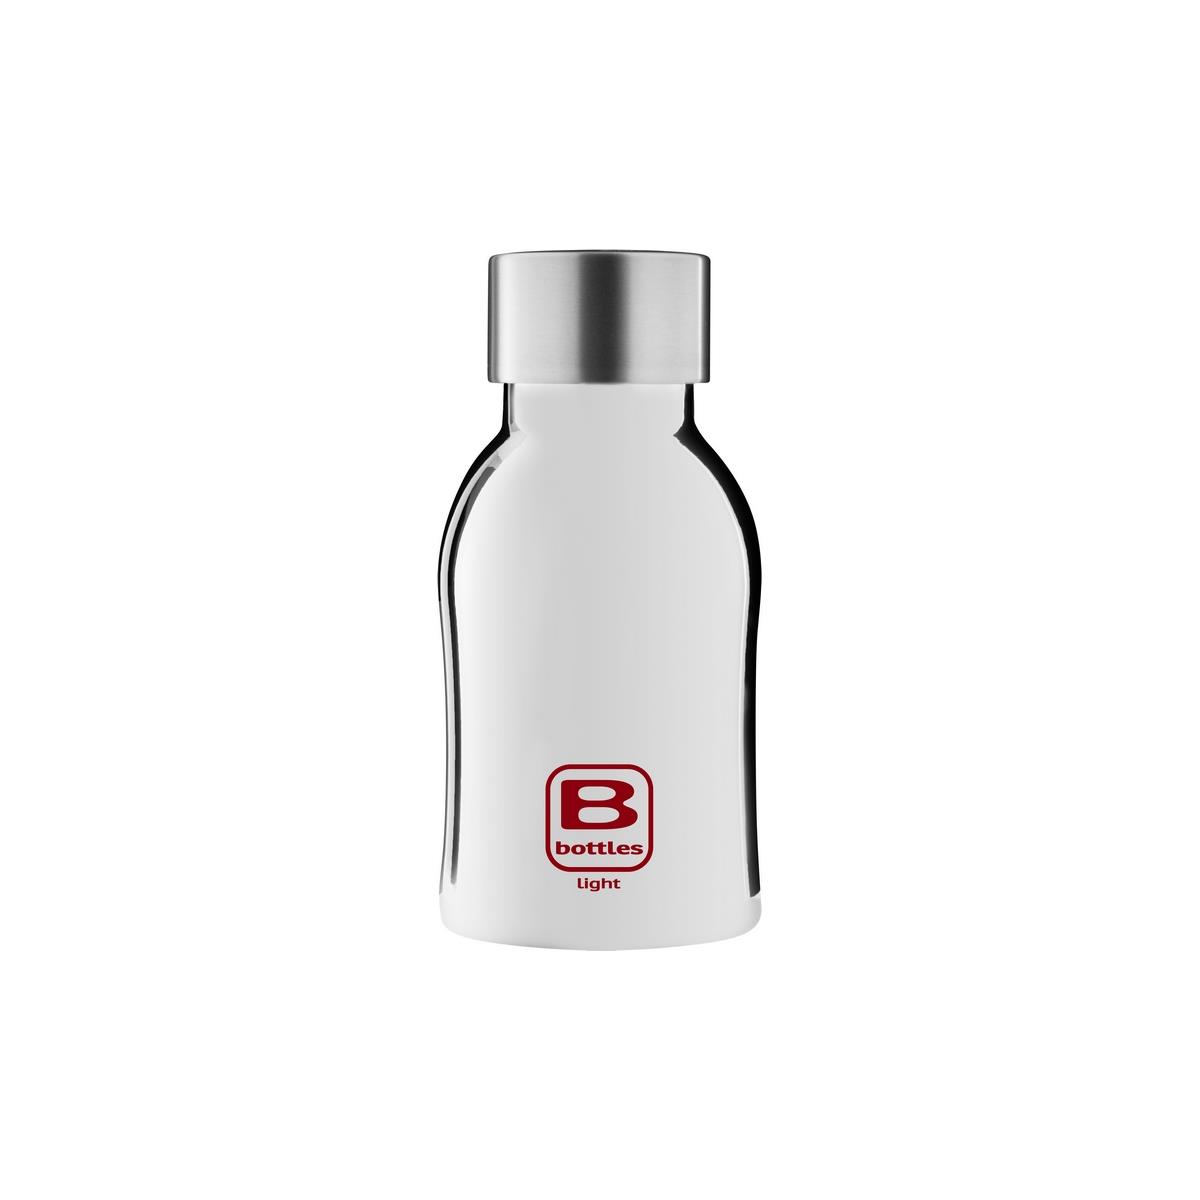 B Bottles Light - Silver Lux - 350 ml - Bouteille ultra légère et compacte en inox 18/10